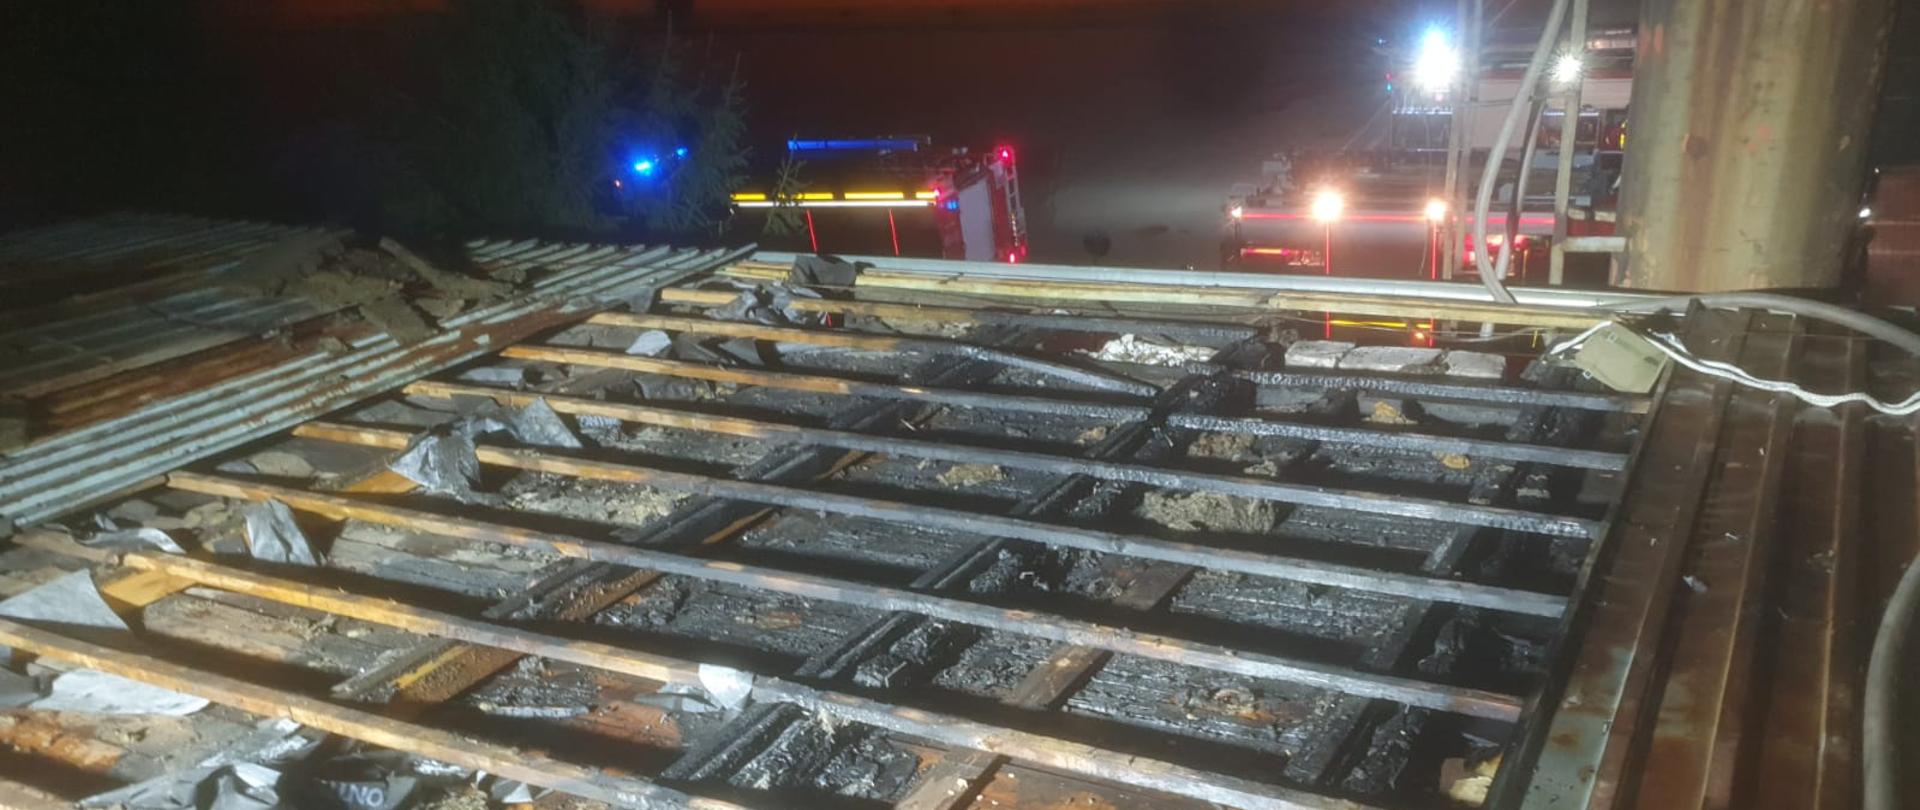 Zdjęcie przedstawia zdemontowaną część pokrycia dachowego z blachy w budynku produkcyjnym oraz spaloną pod nią elementy drewniane. W oddali widoczne są pojazdy pożarnicze